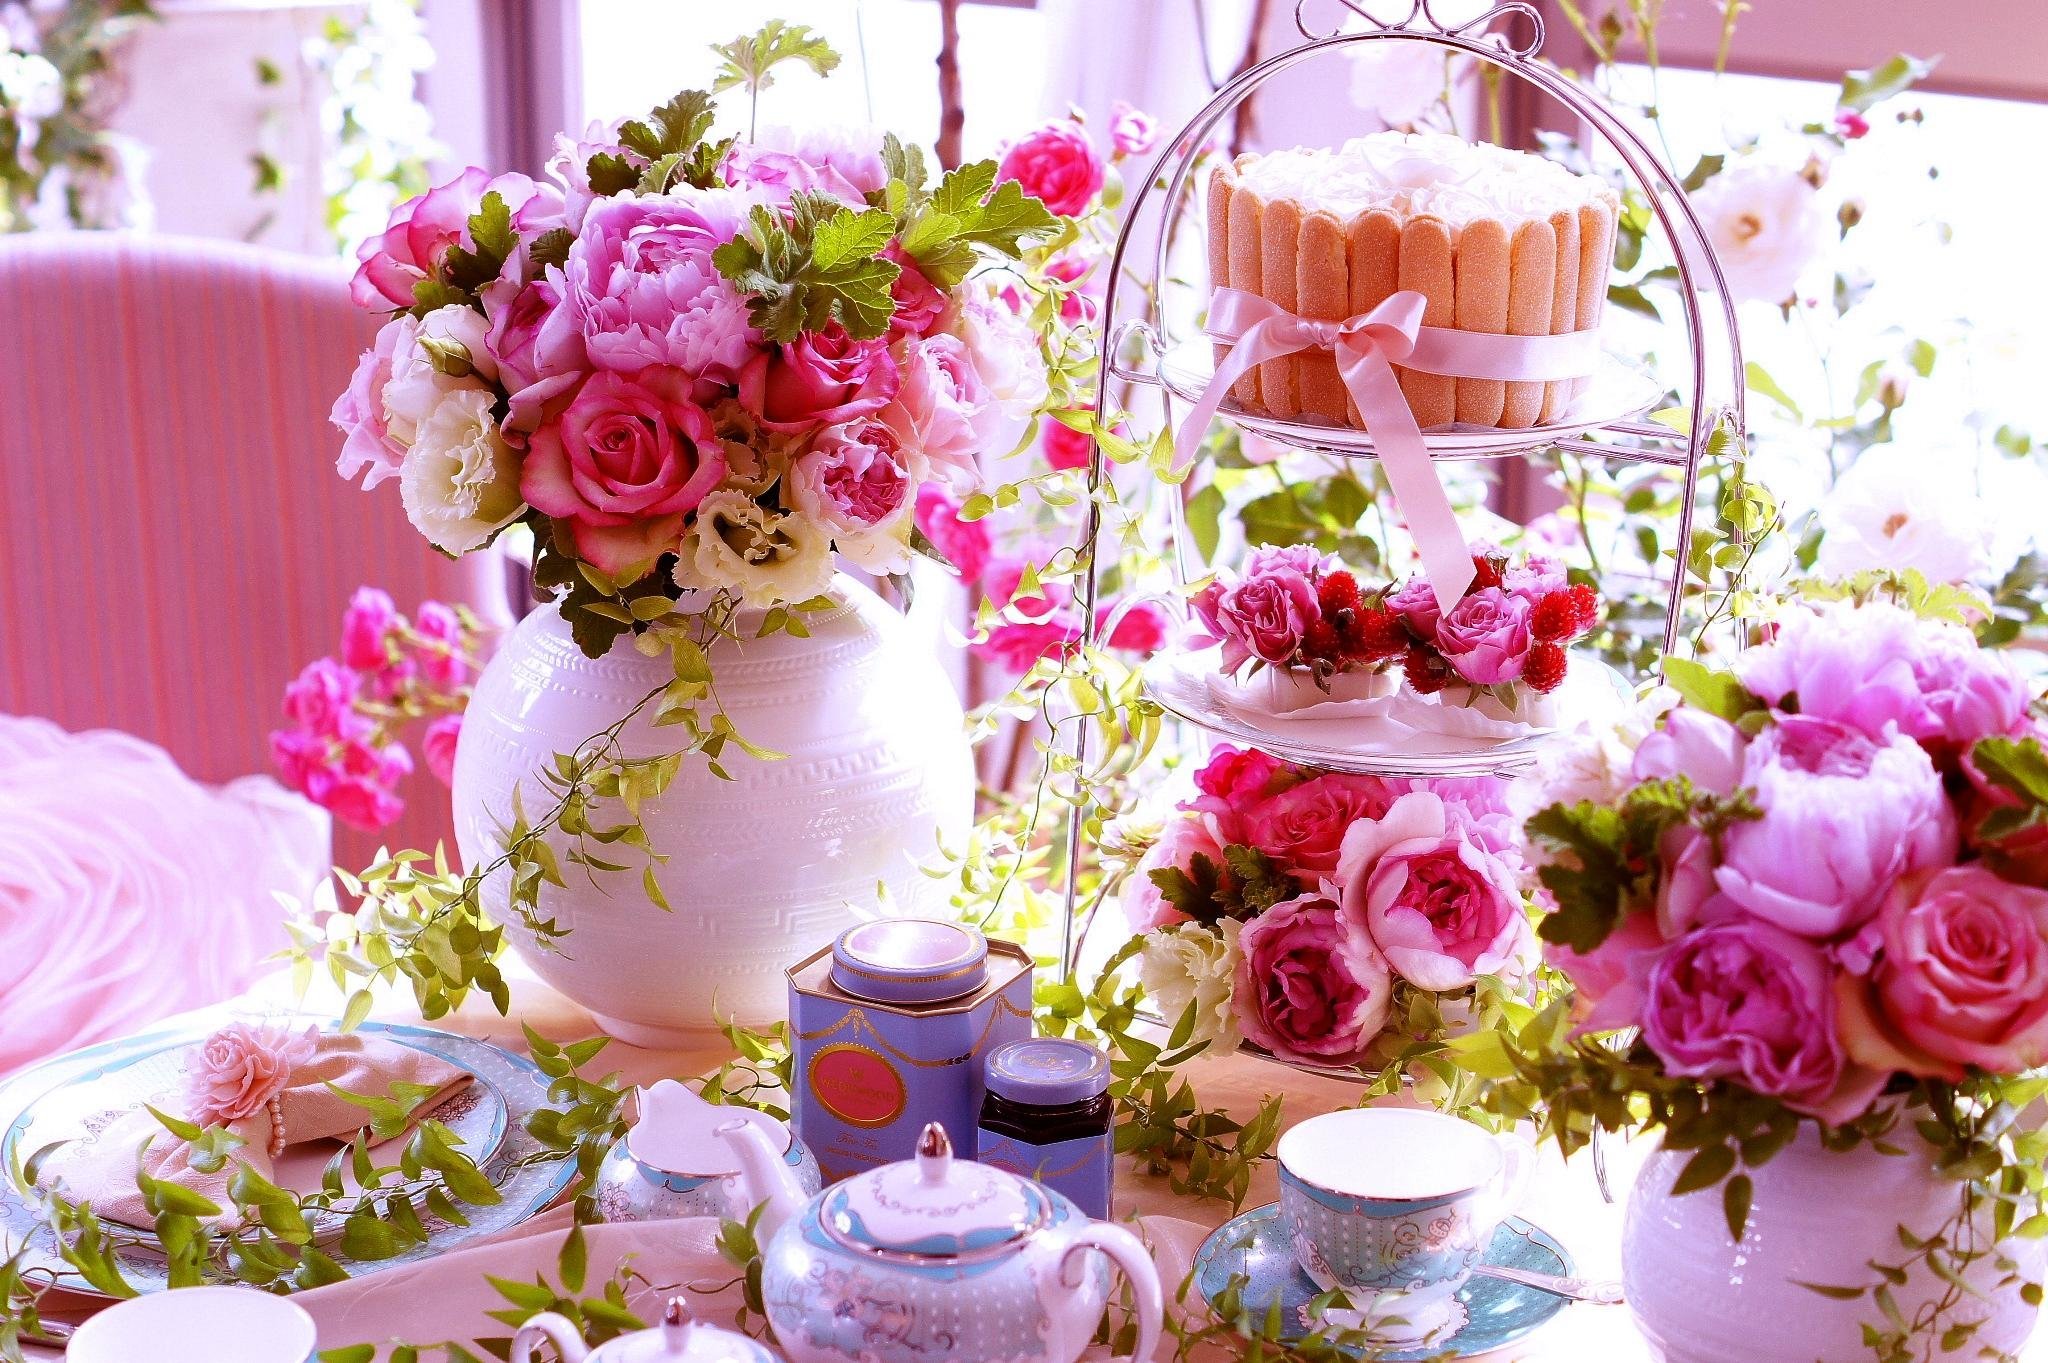 Картинка с цветами на столе. Красивые цветы и торт. Утренние цветы. Нежная Цветочная композиция. Цветы на столе.